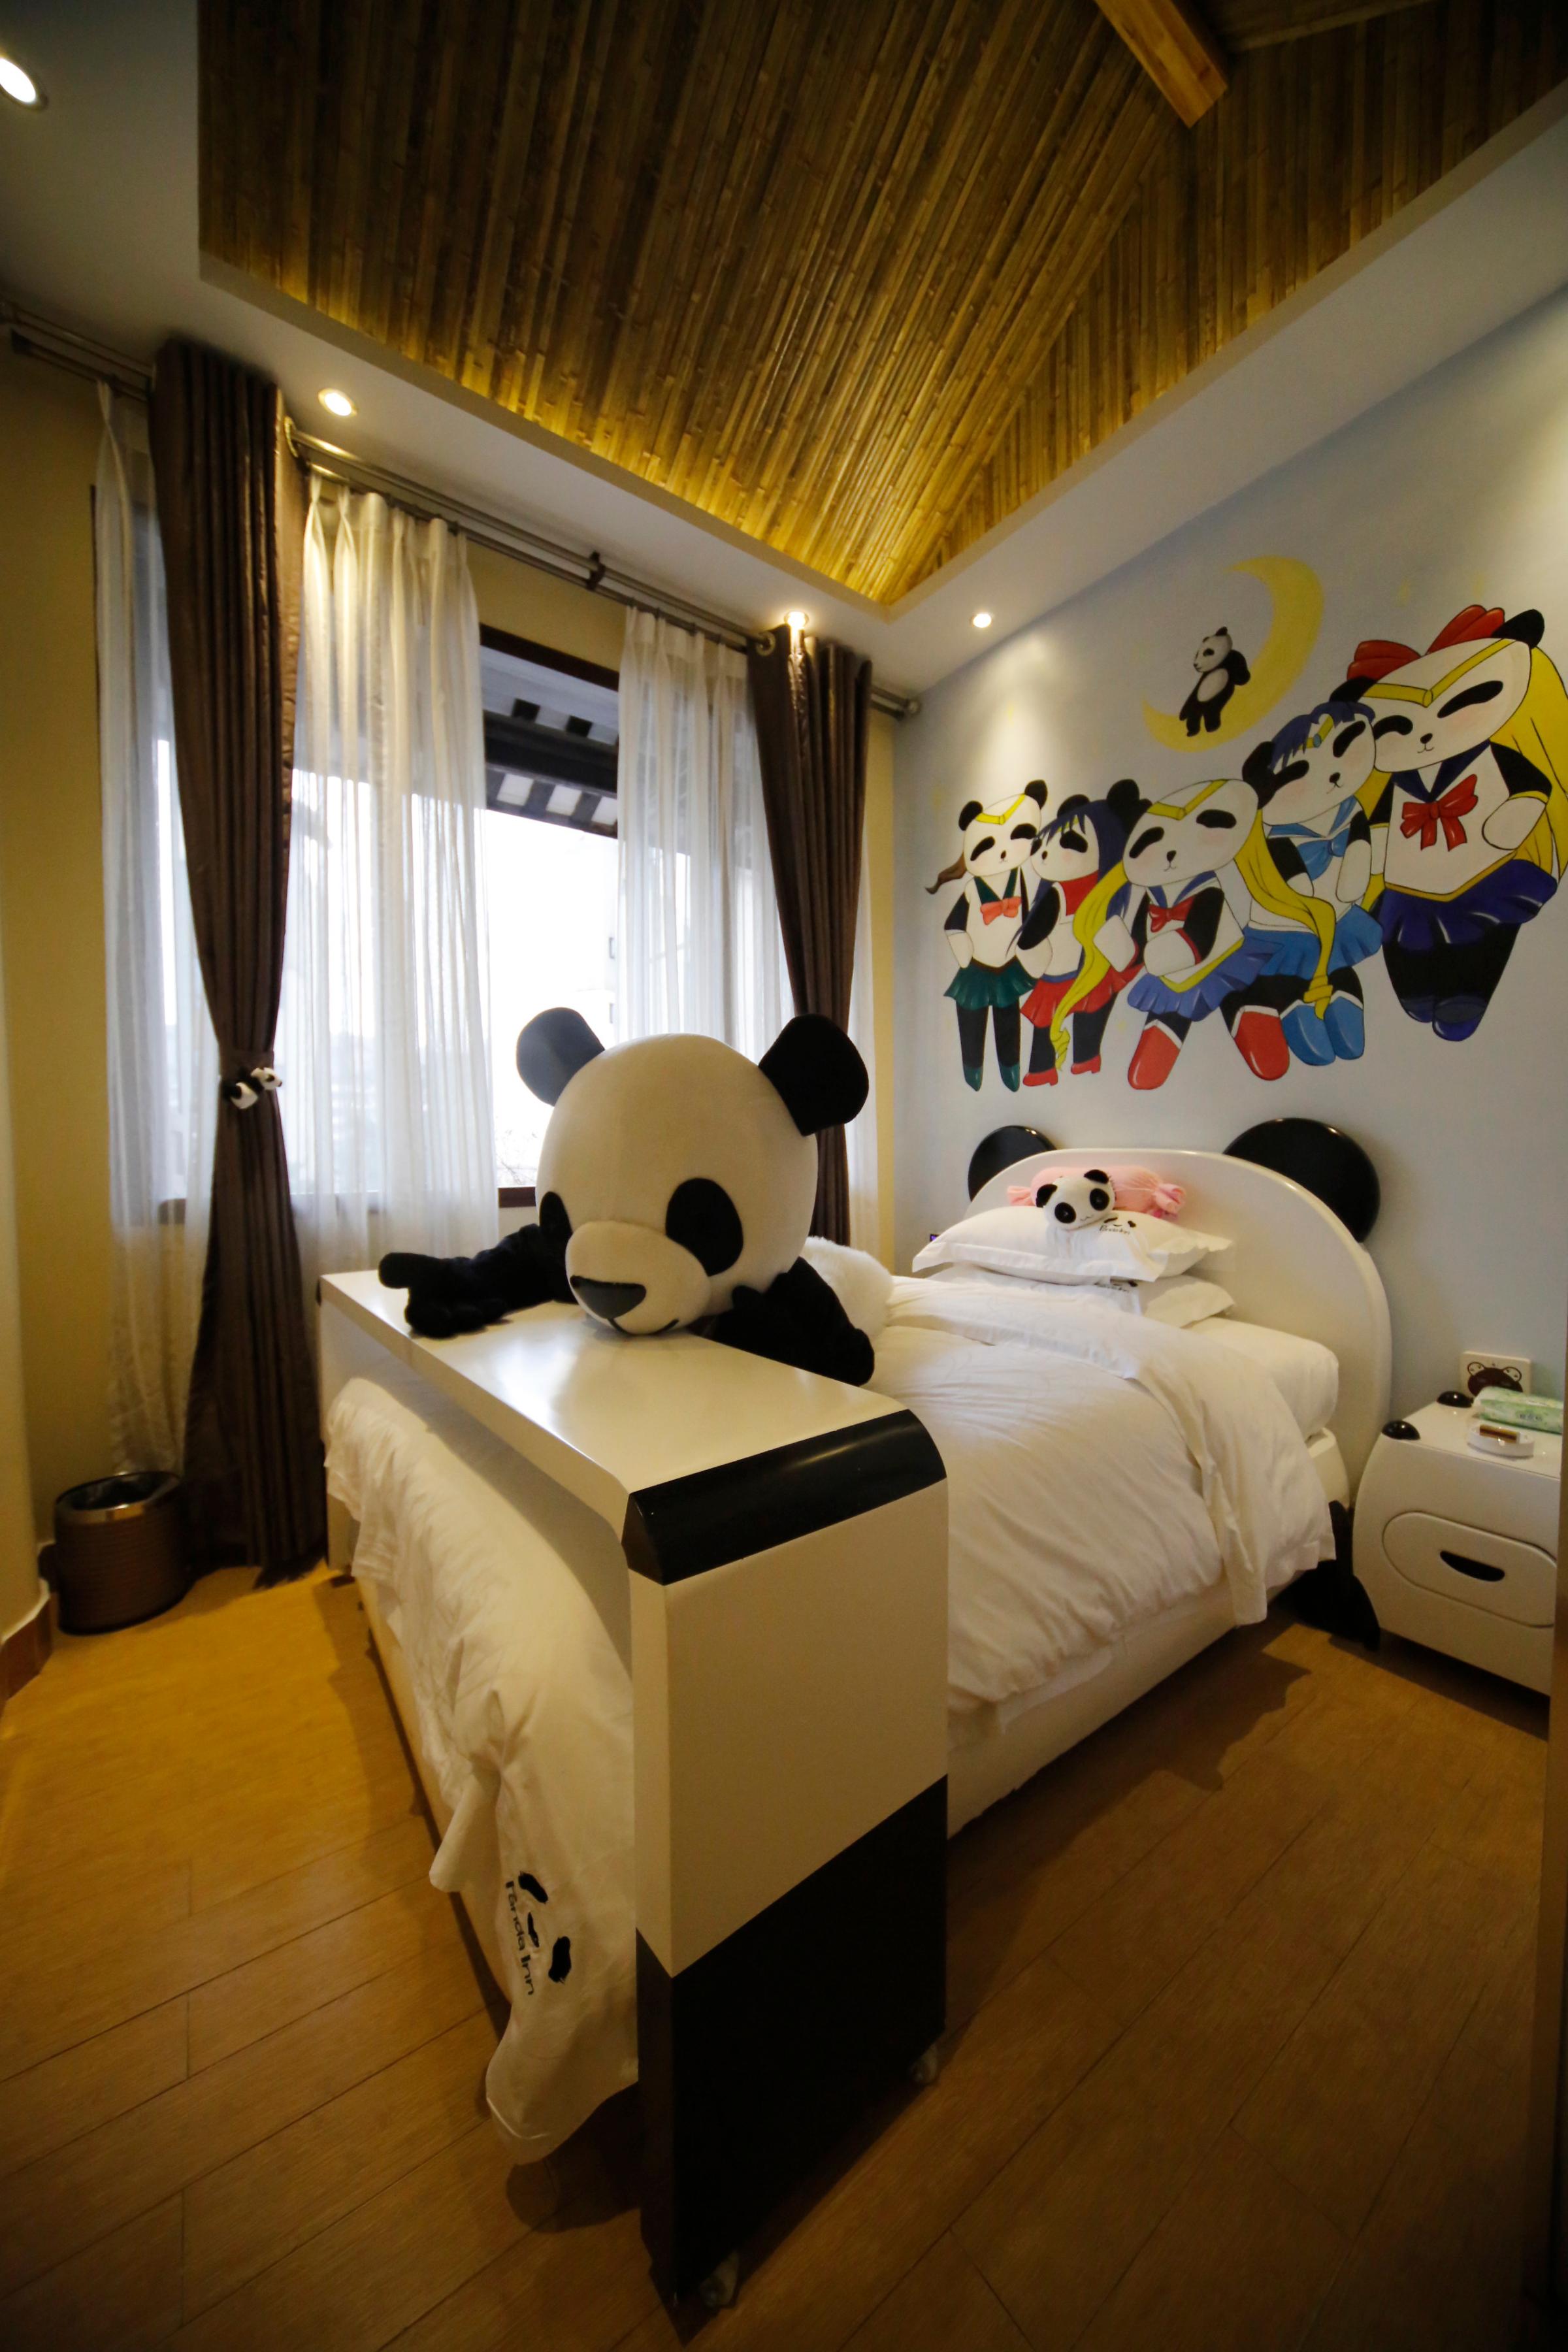 CHINA-LIFESTYLE-PANDA-HOTEL